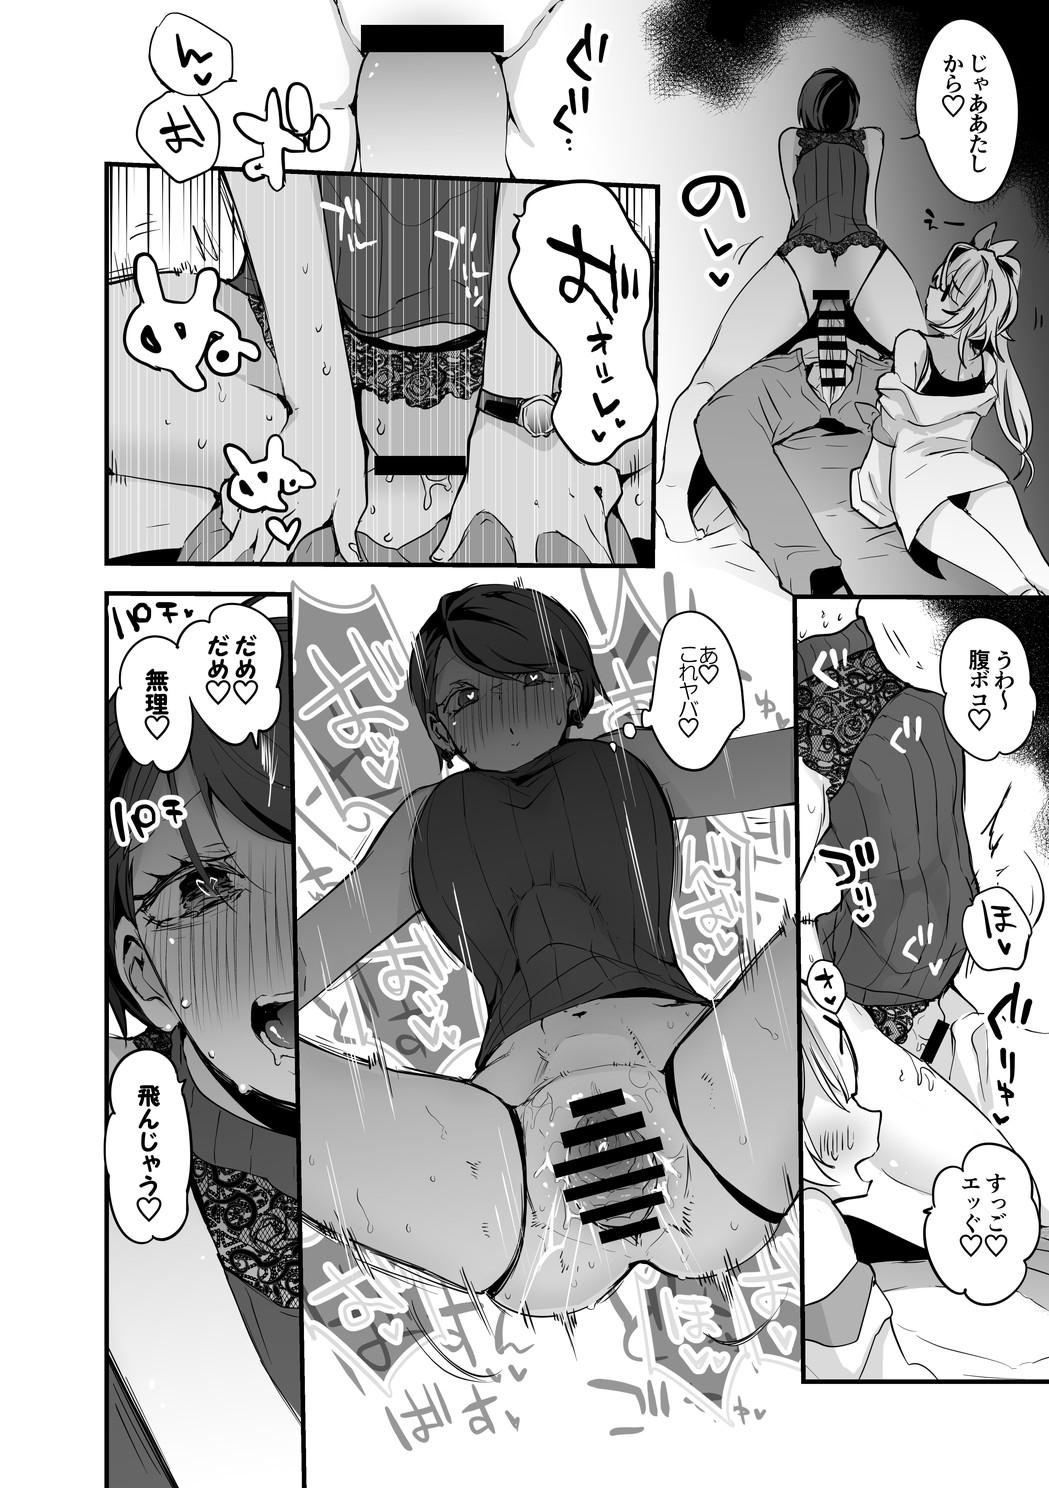 Gozada それ行け炎上流星群編 - Nijisanji Gay Natural - Page 5